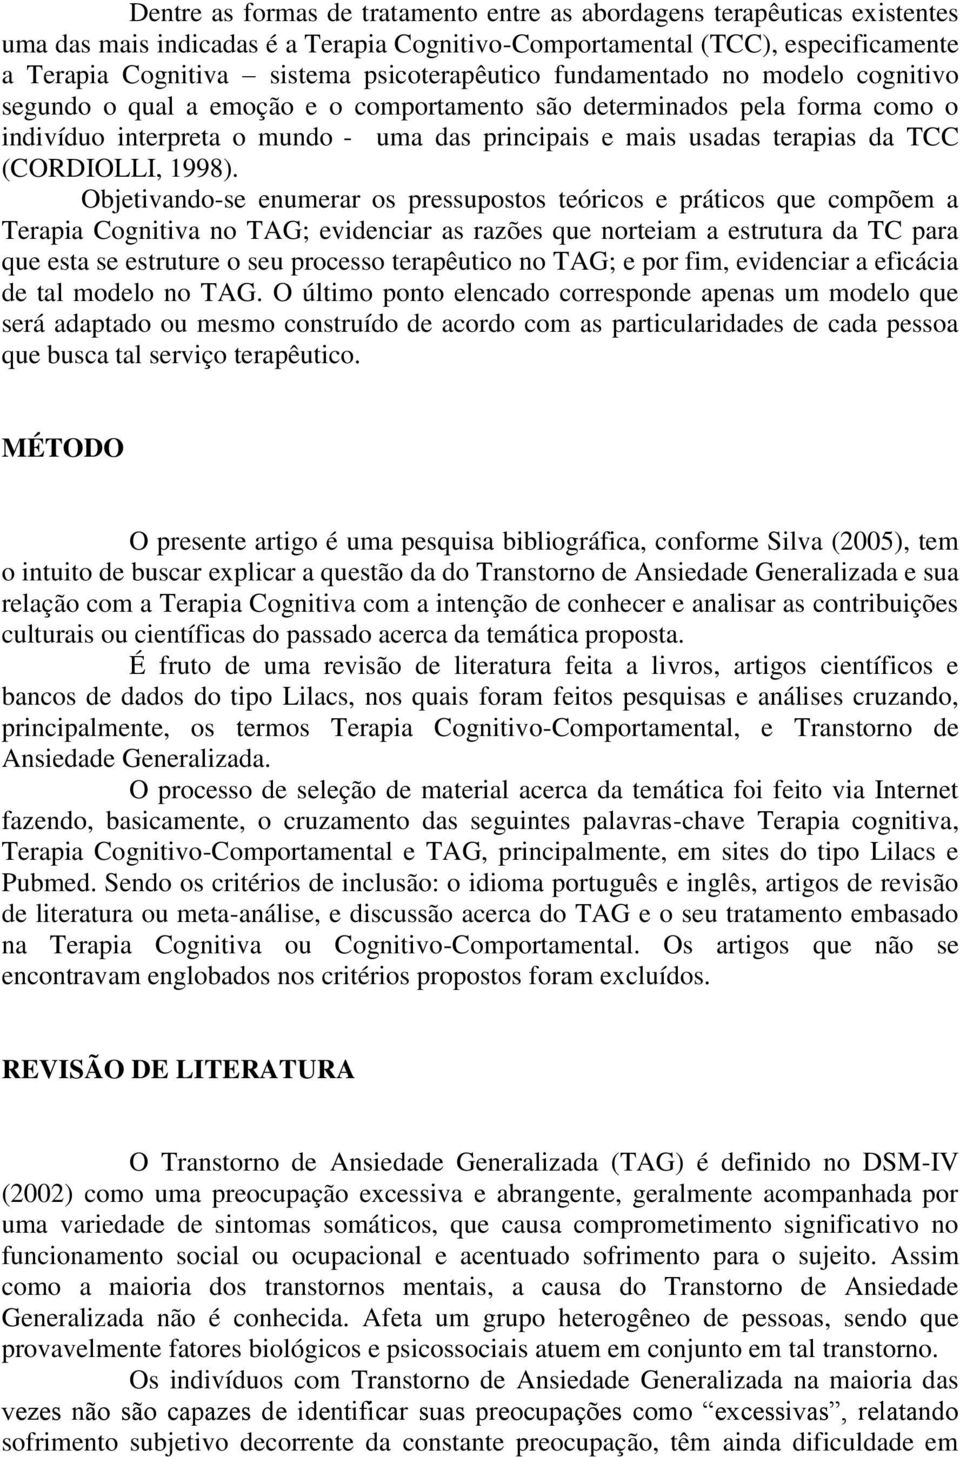 da TCC (CORDIOLLI, 1998).